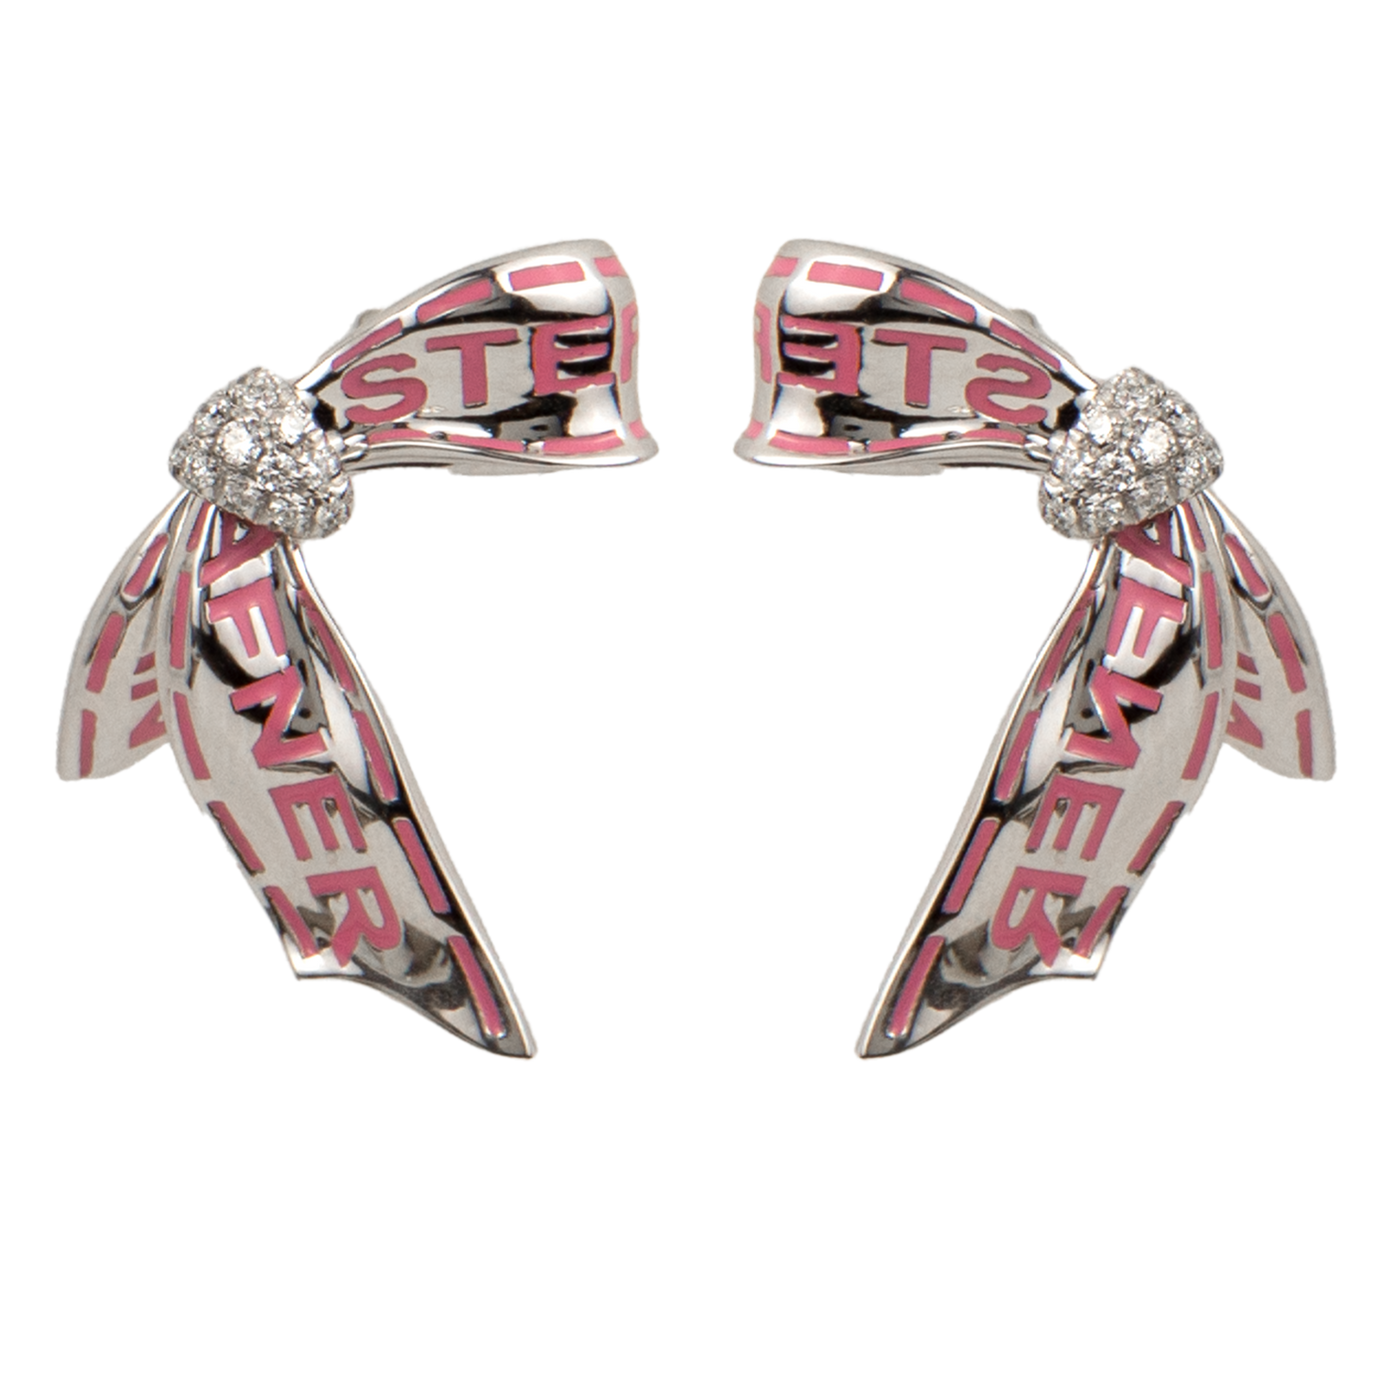 Stefan Hafner 18K White Gold Diamond Bow Earrings